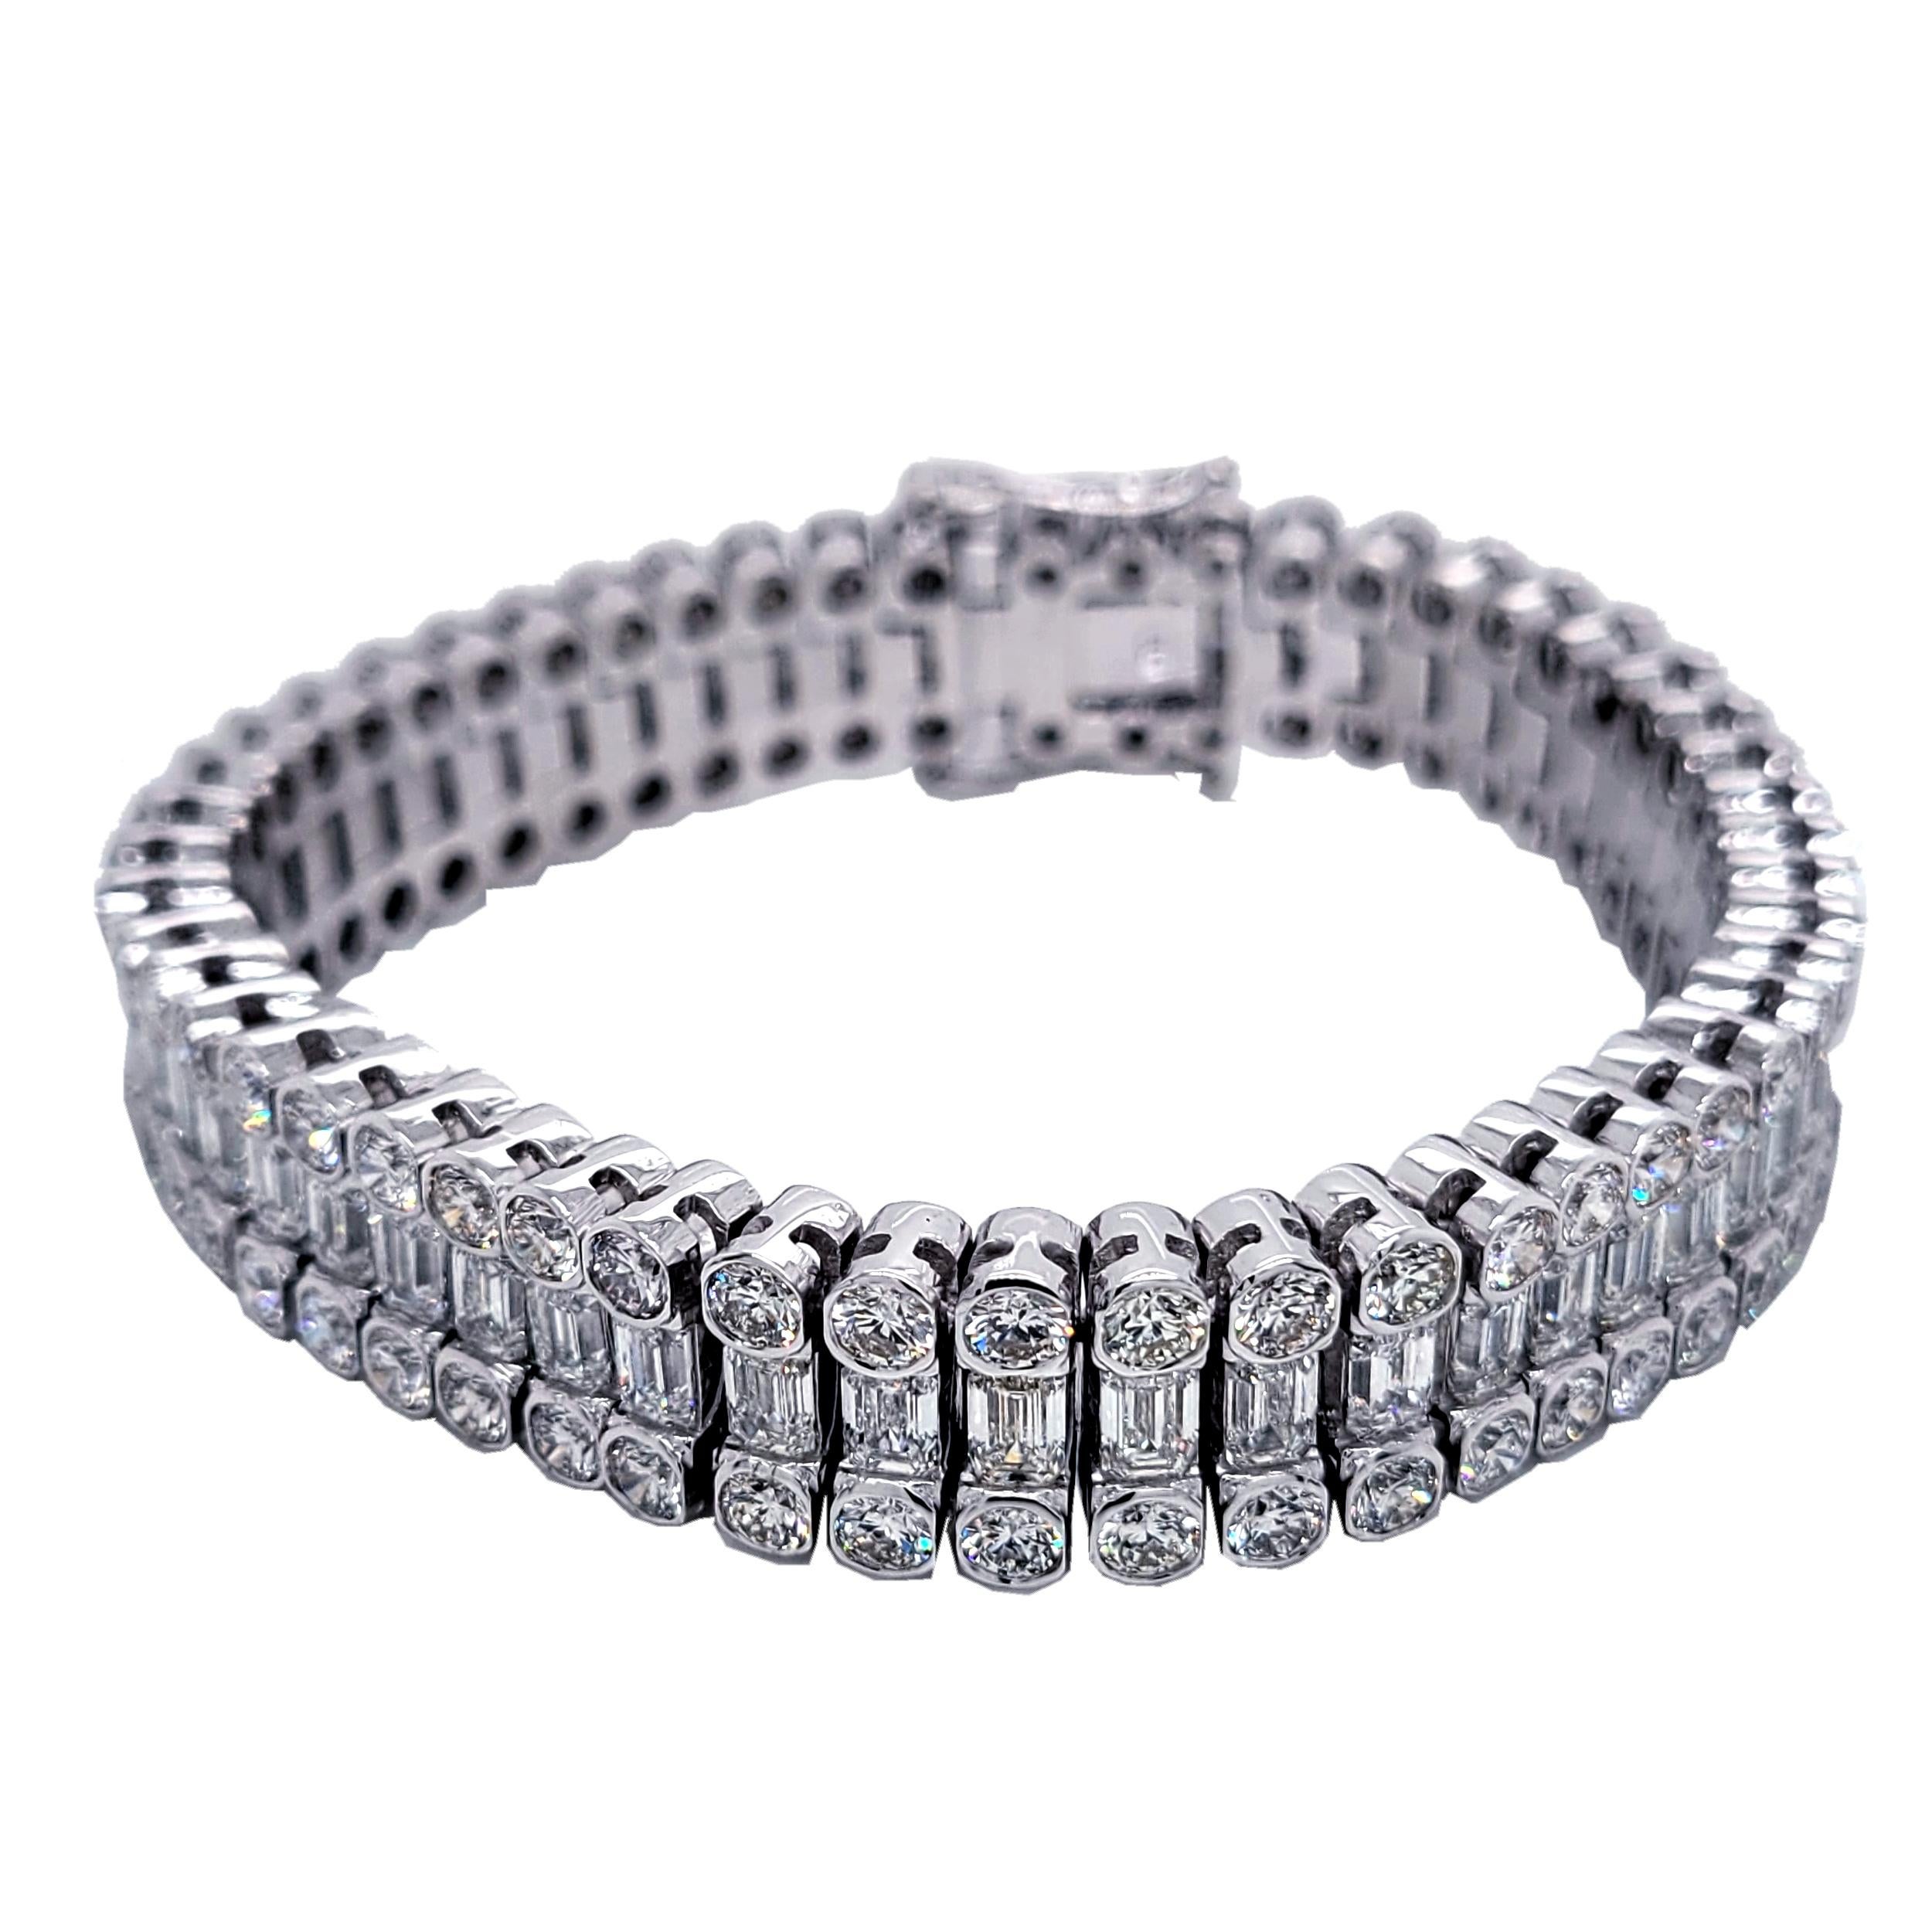 Cet élégant bracelet tennis en diamants est composé de 51 maillons de diamants ronds Brilliante/Émeraude sertis en or blanc 18 carats. Il mesure 7 pouces de long et environ 1/2 pouce de large.  Ce bracelet est fabriqué par des artisans de la plus